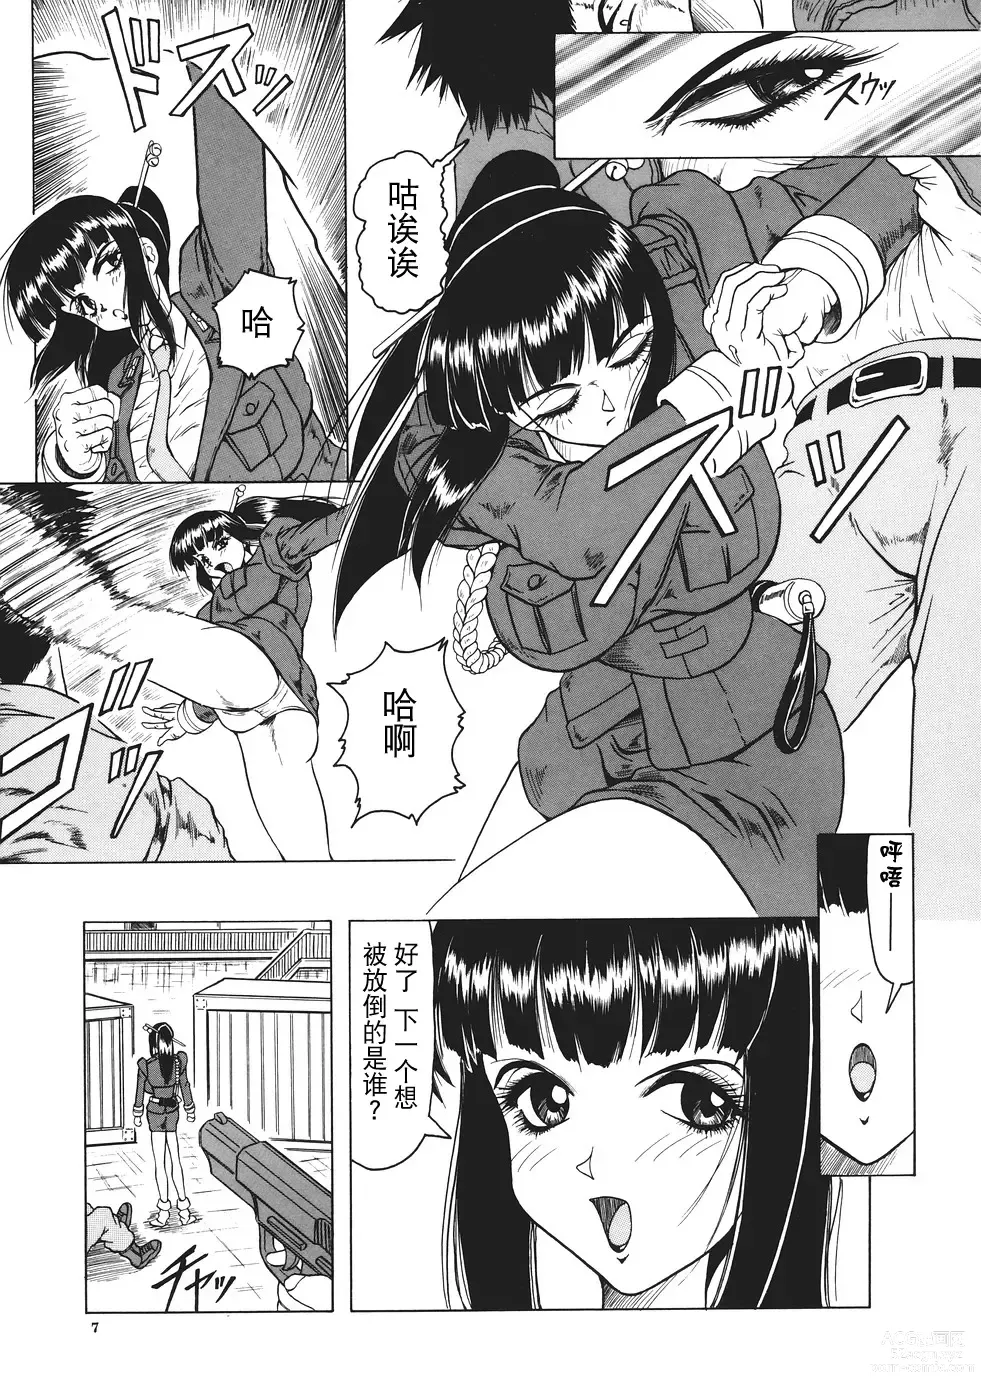 Page 8 of manga Kamyla